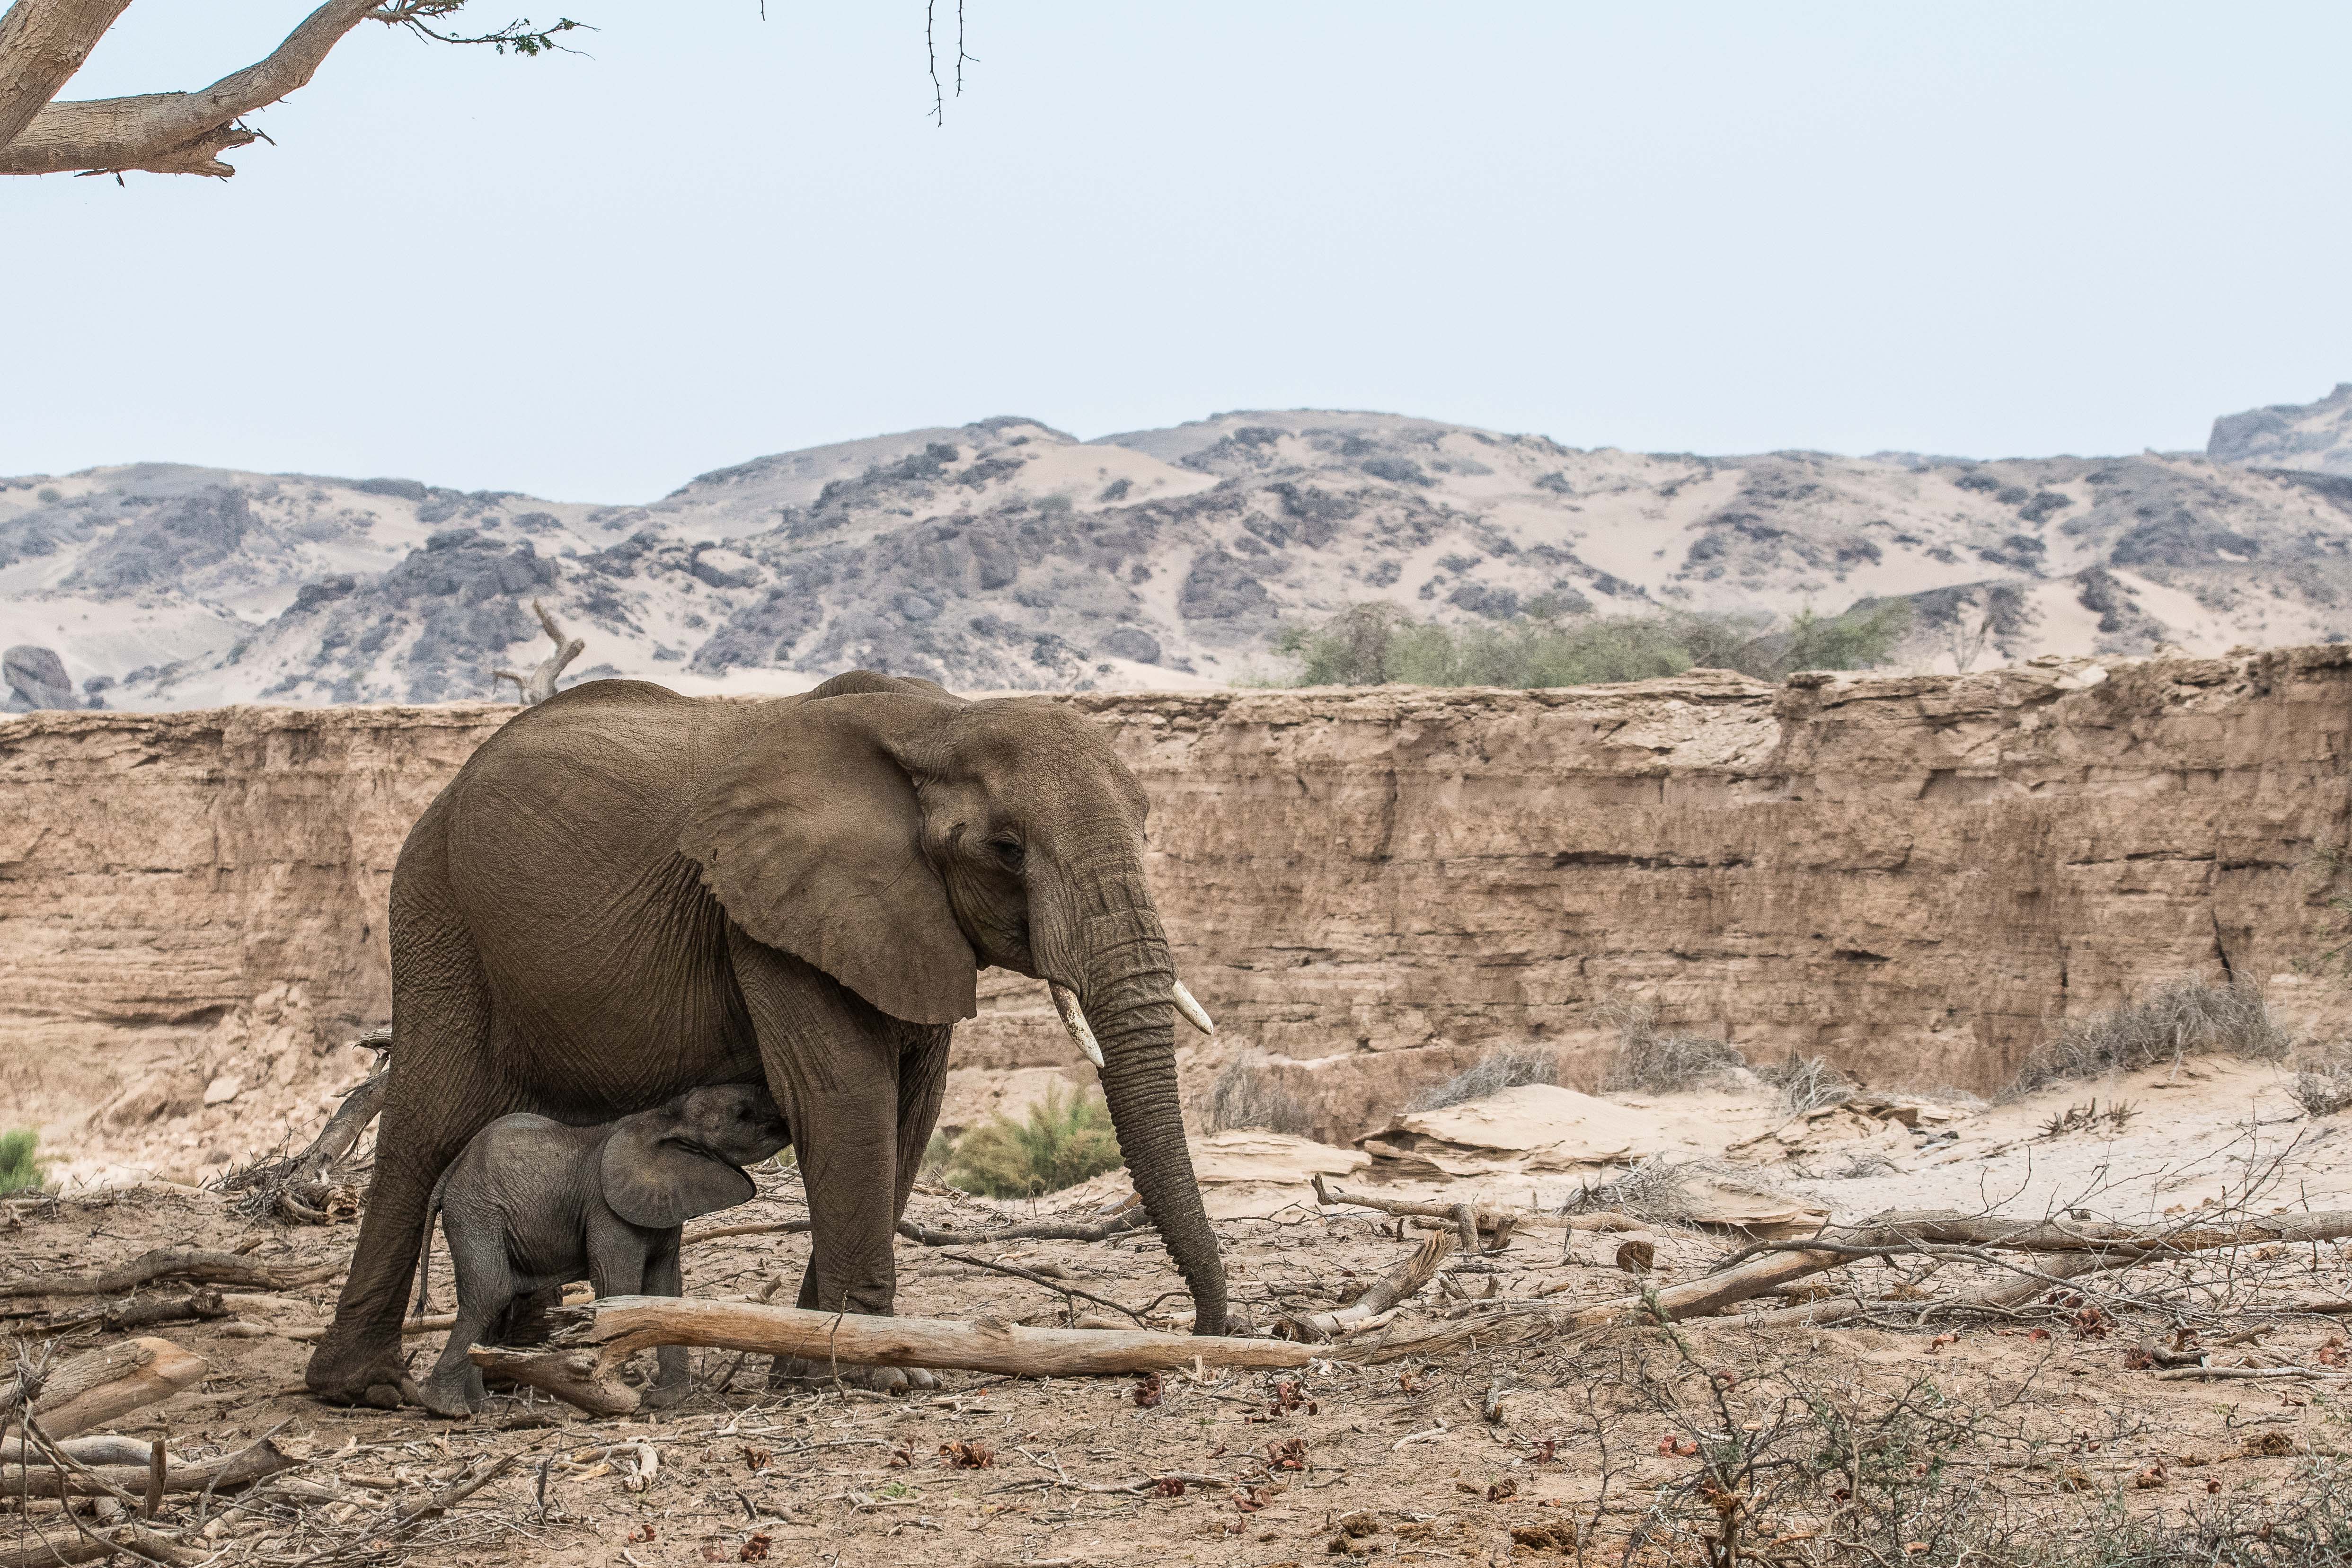 Eléphants du désert (Desert-adapted elephants, Loxodonta africana), femelle adulte allaitant son éléphanteau dans le lit de la rivière Hoanib alors à sec, Kaokoland, Région de Kunene, Namibie.